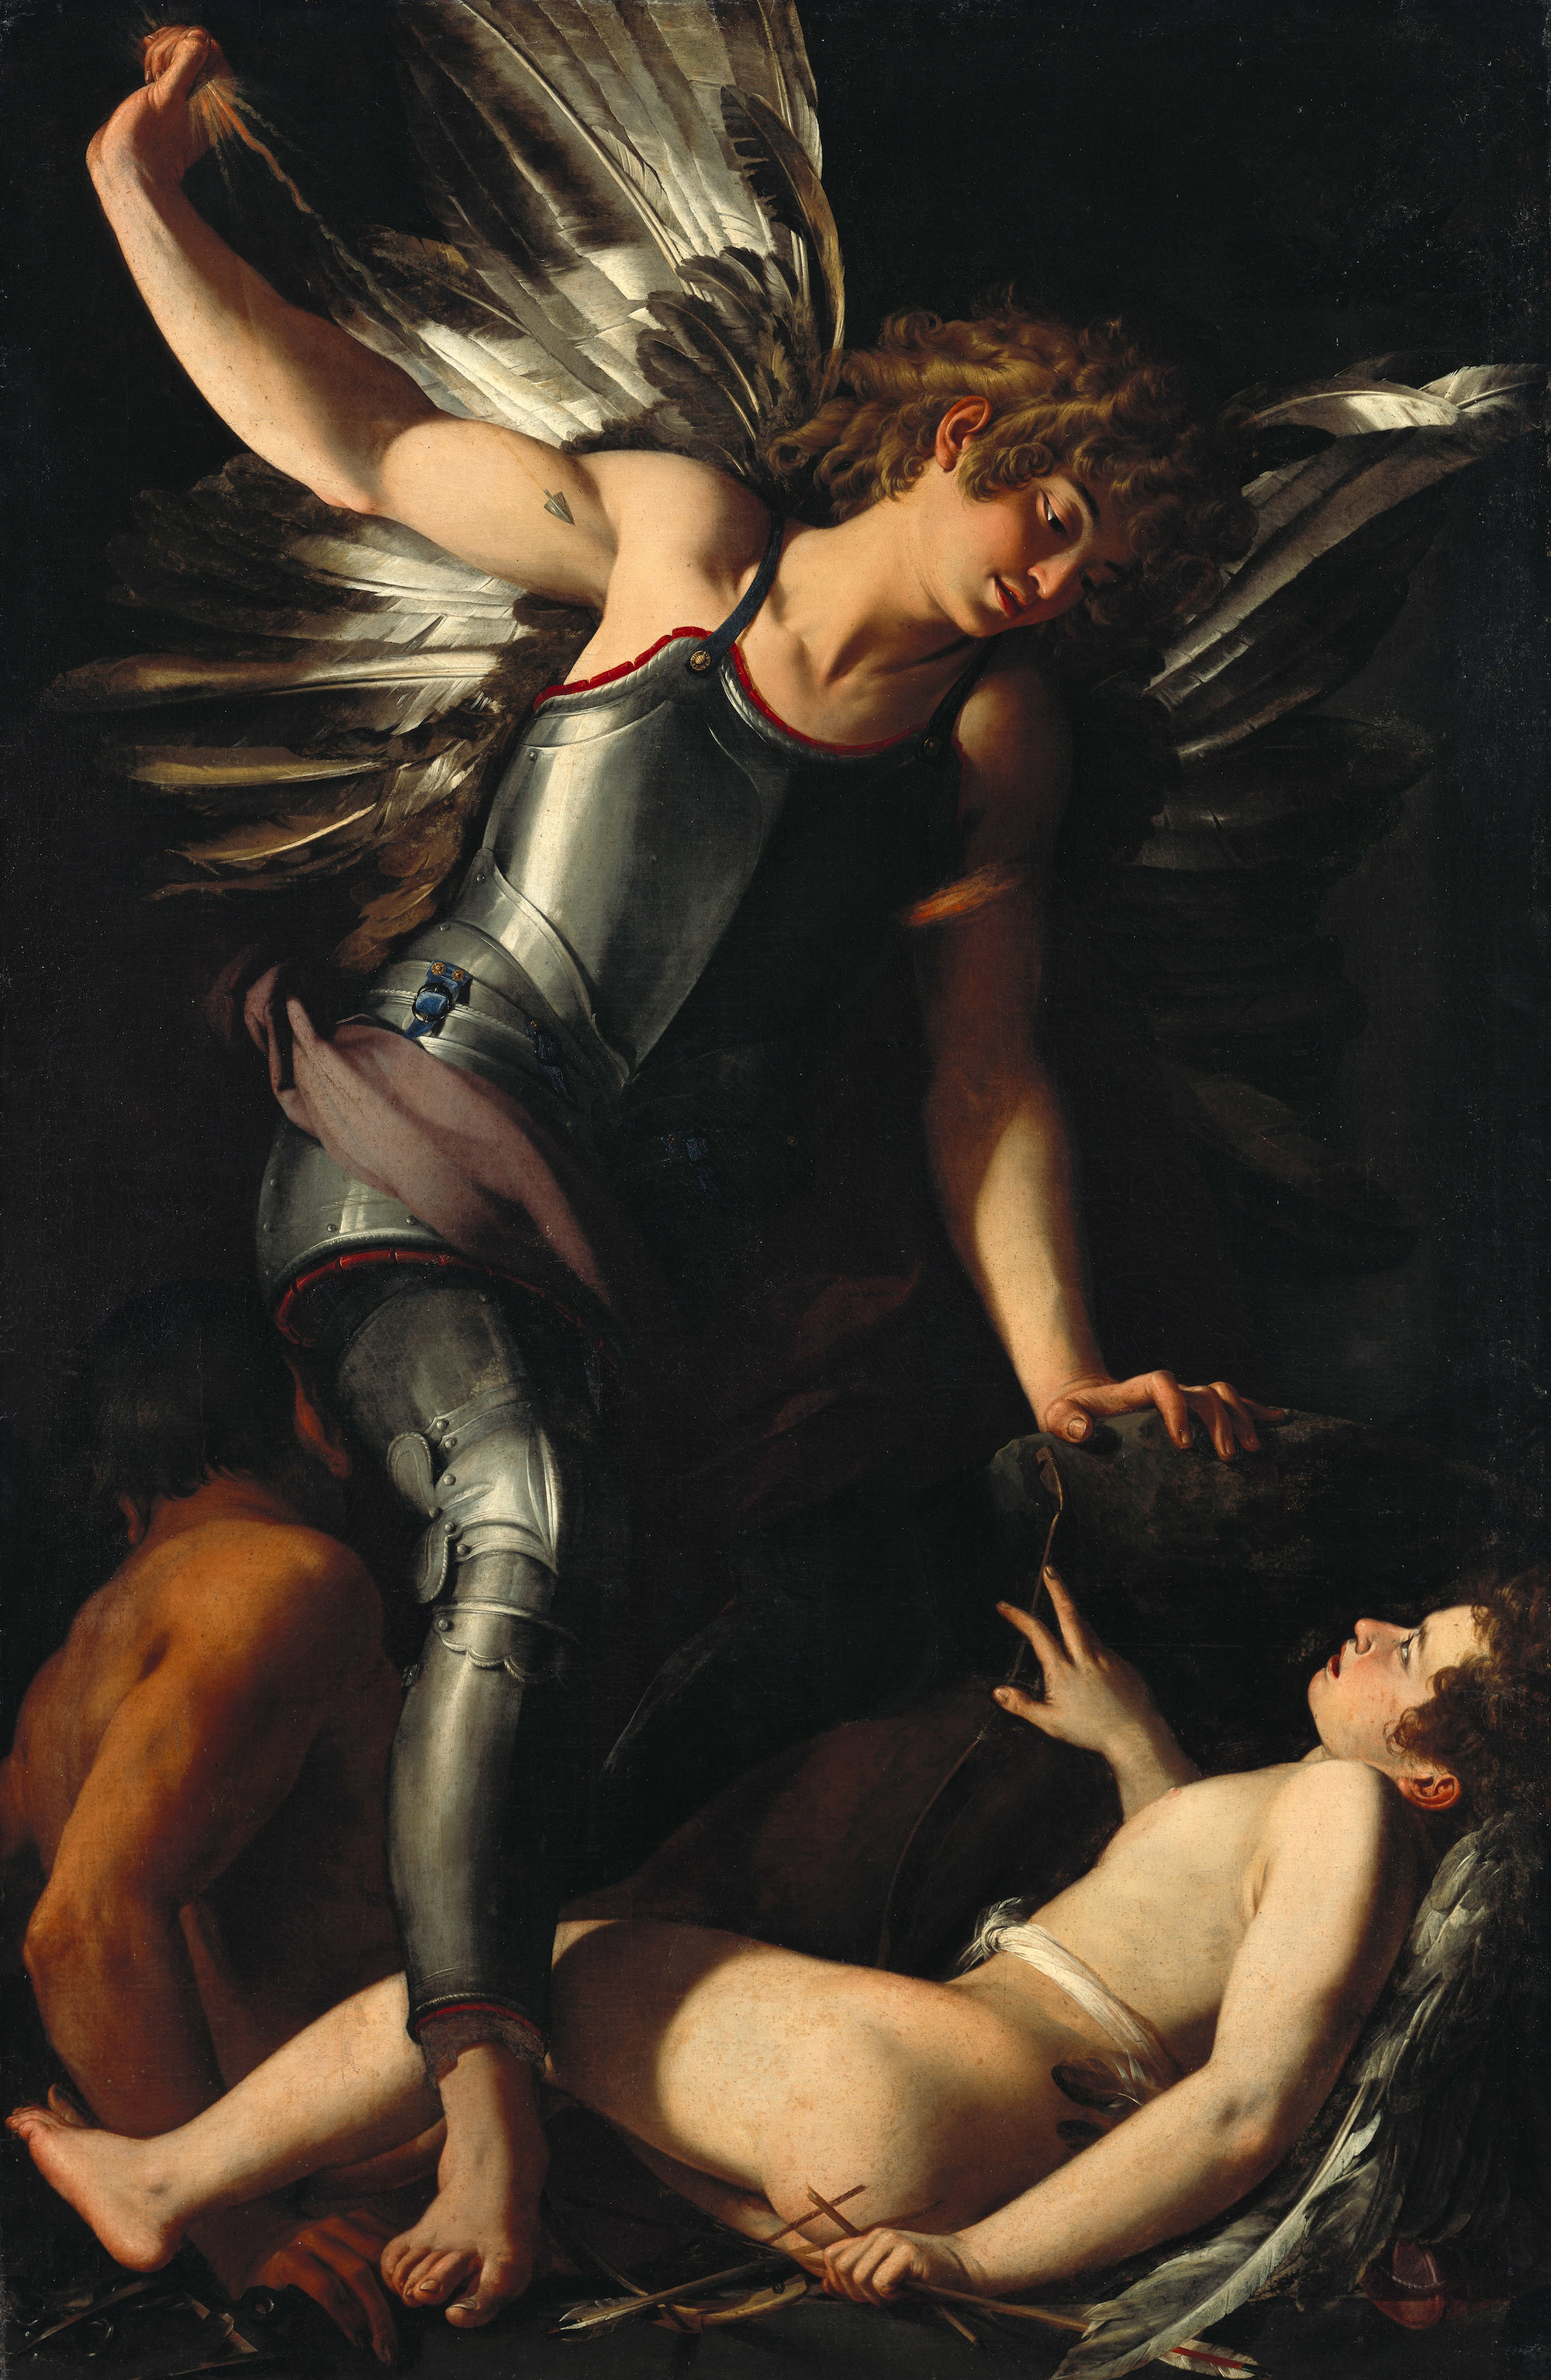  أيروس السماوي (أيروس اله الحب) يهزم أيروس الدنيوي by Giovanni Baglione - حوالي 1602 - 121.4 x 183.4 cm 